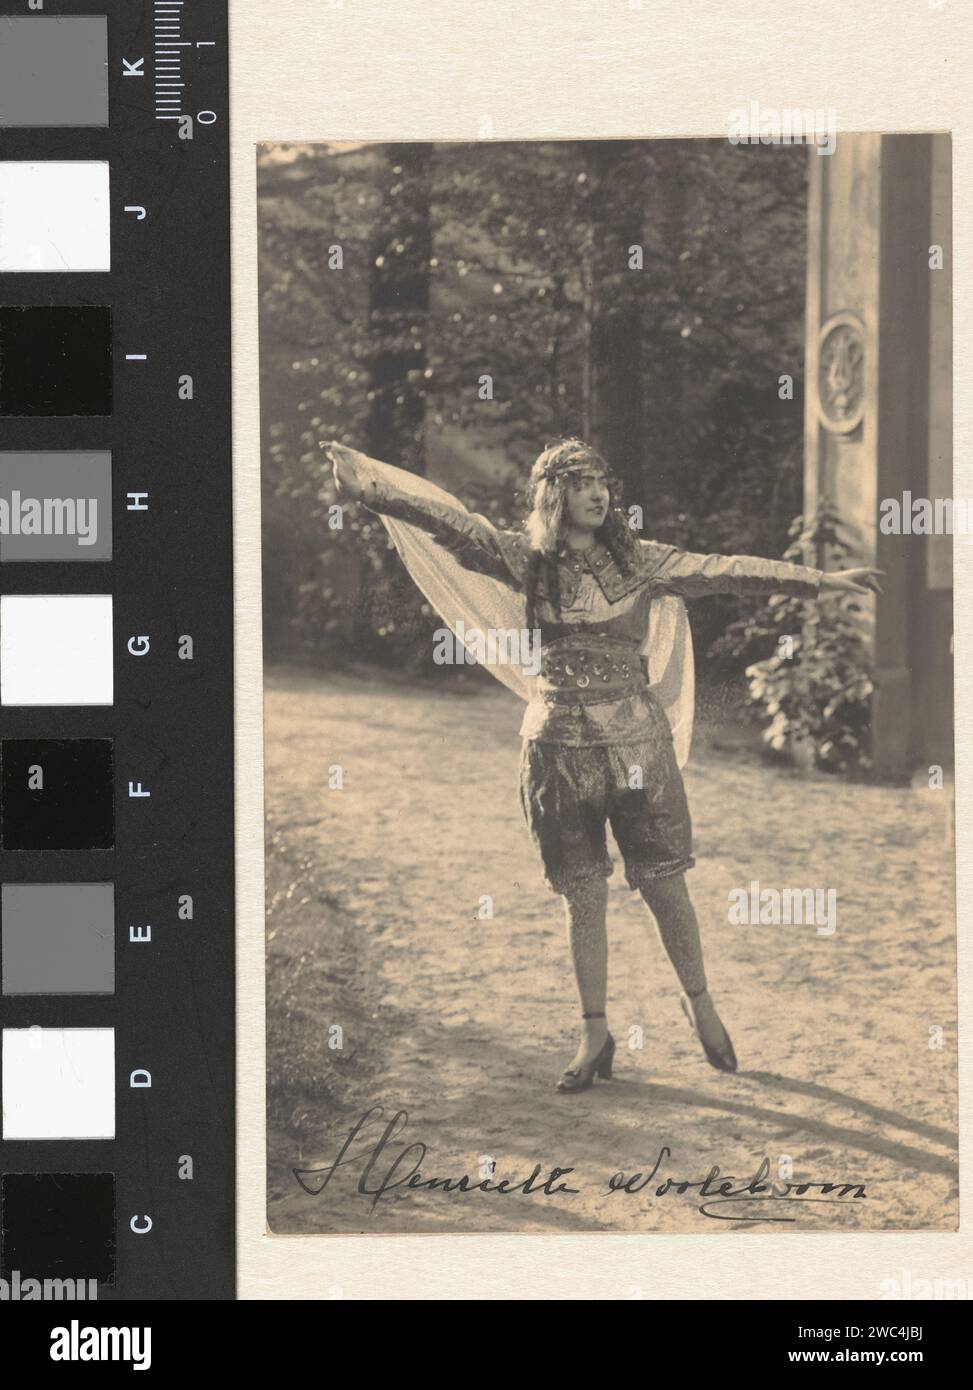 Henriëtte Nooteboom in einem Tanzplatz, Adrianus van Beurden, 1900 - 1940 Fotografie Tilburg Papier Gelatine Silberdruck historische Personen. Frau, die allein tanzt Niederlande Stockfoto